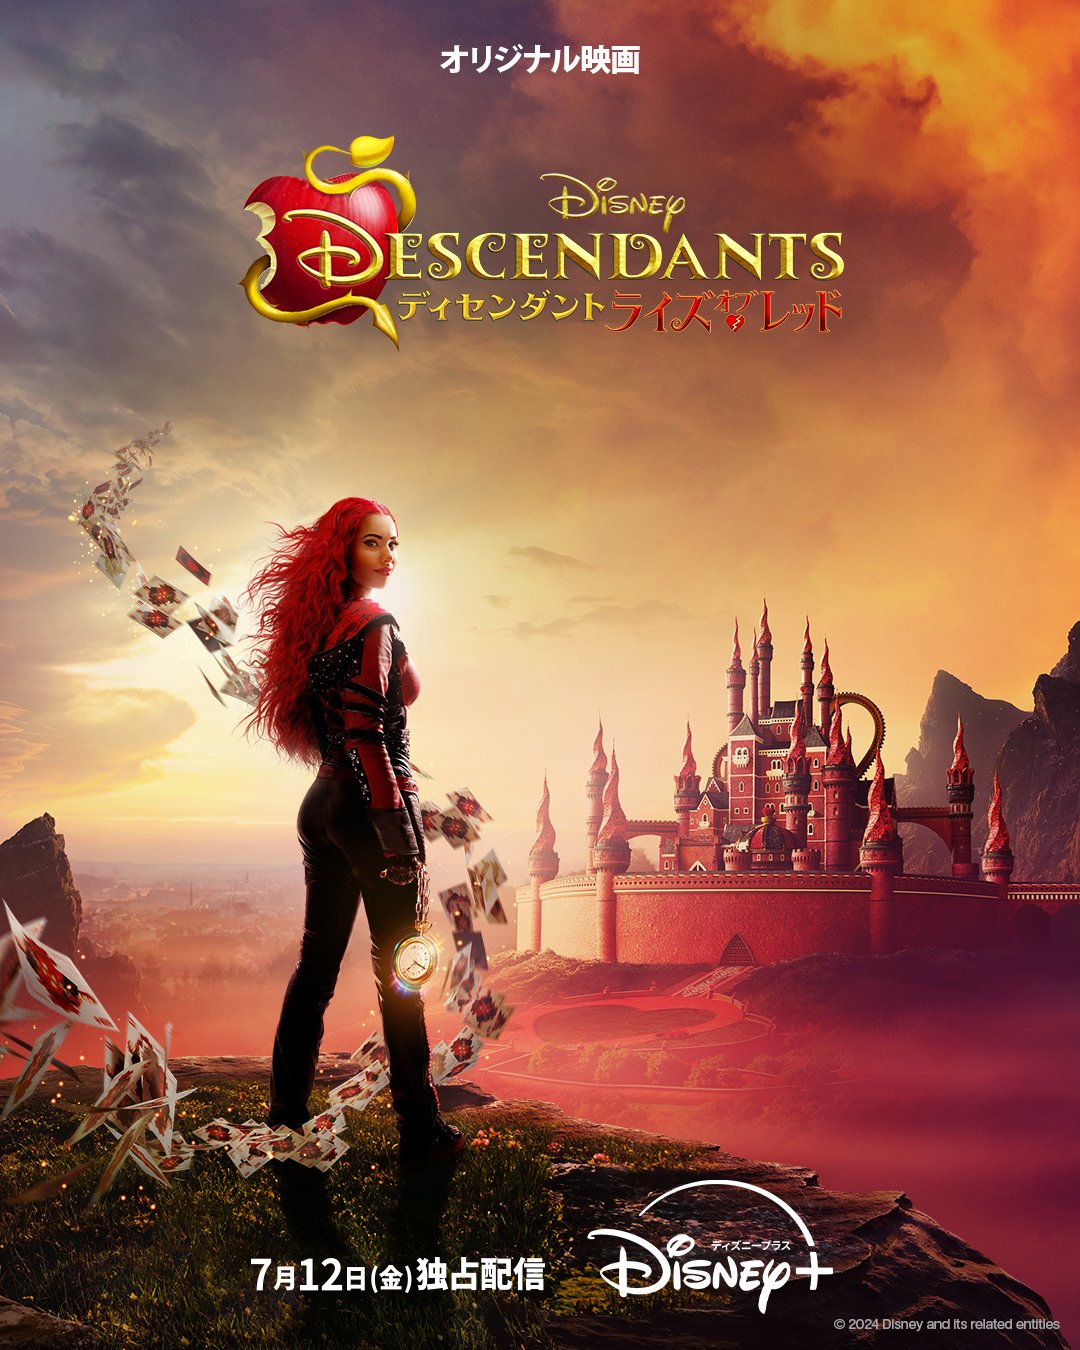 ハートの女王とシンデレラの娘たちが主人公！Disney+(ディズニープラス)『ディセンダント ライズ・オブ・レッド』